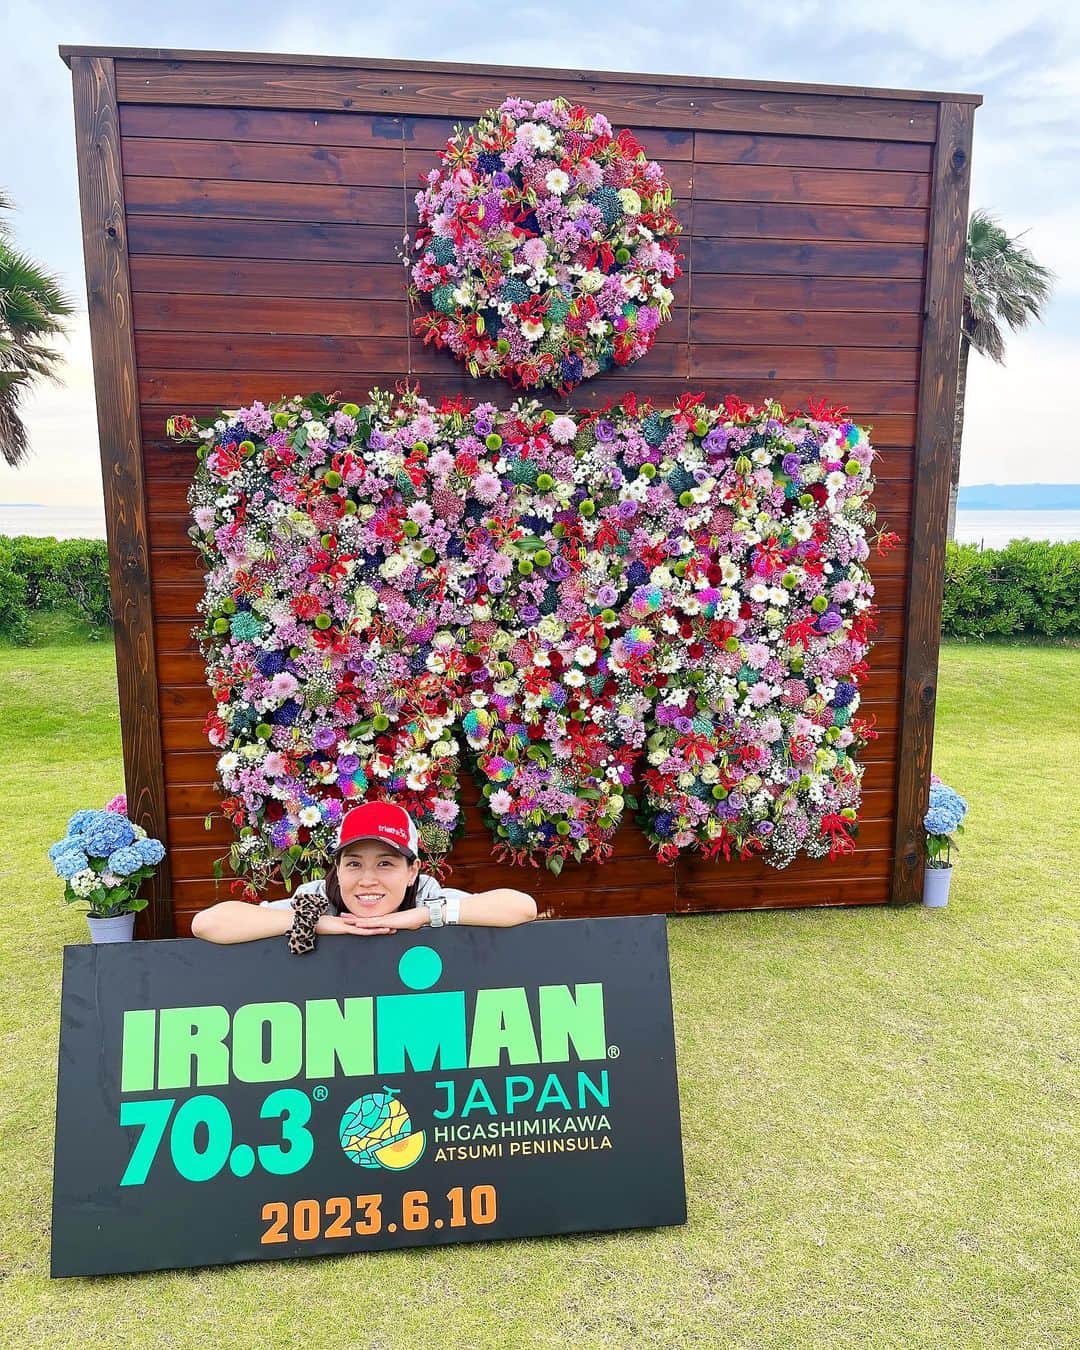 水越結花のインスタグラム：「🎪 IRONMAN JAPAN 70.3！ Higashimikawa（愛知県🌴） にチェックイン✨✨ @ironman70.3japanhigashimikawa #ironmanjapan  【No.711 水越結花】  Swim 1.9km Bike 90km Run 21kmのコース！  距離的には99Tのミドル完走経験があるけど 極寒の中☔️ほぼ白目でほぼ記憶なし！笑 IRONMANレースは初めて😍  白戸太朗さんに相変わらず握力強め握手で パワーチャージしてもろたからきっと大丈夫✊ 笑顔で完走して ハーフアイアンマンになるぞー！  まずはスタートラインに立てるように カーボパーティdone🍝 明日6:25🌅🏝には 海に飛び込んでおります！はえーっ！！  THANKYOU GOOOODAY🌈 おやすみなさい🌜✨」